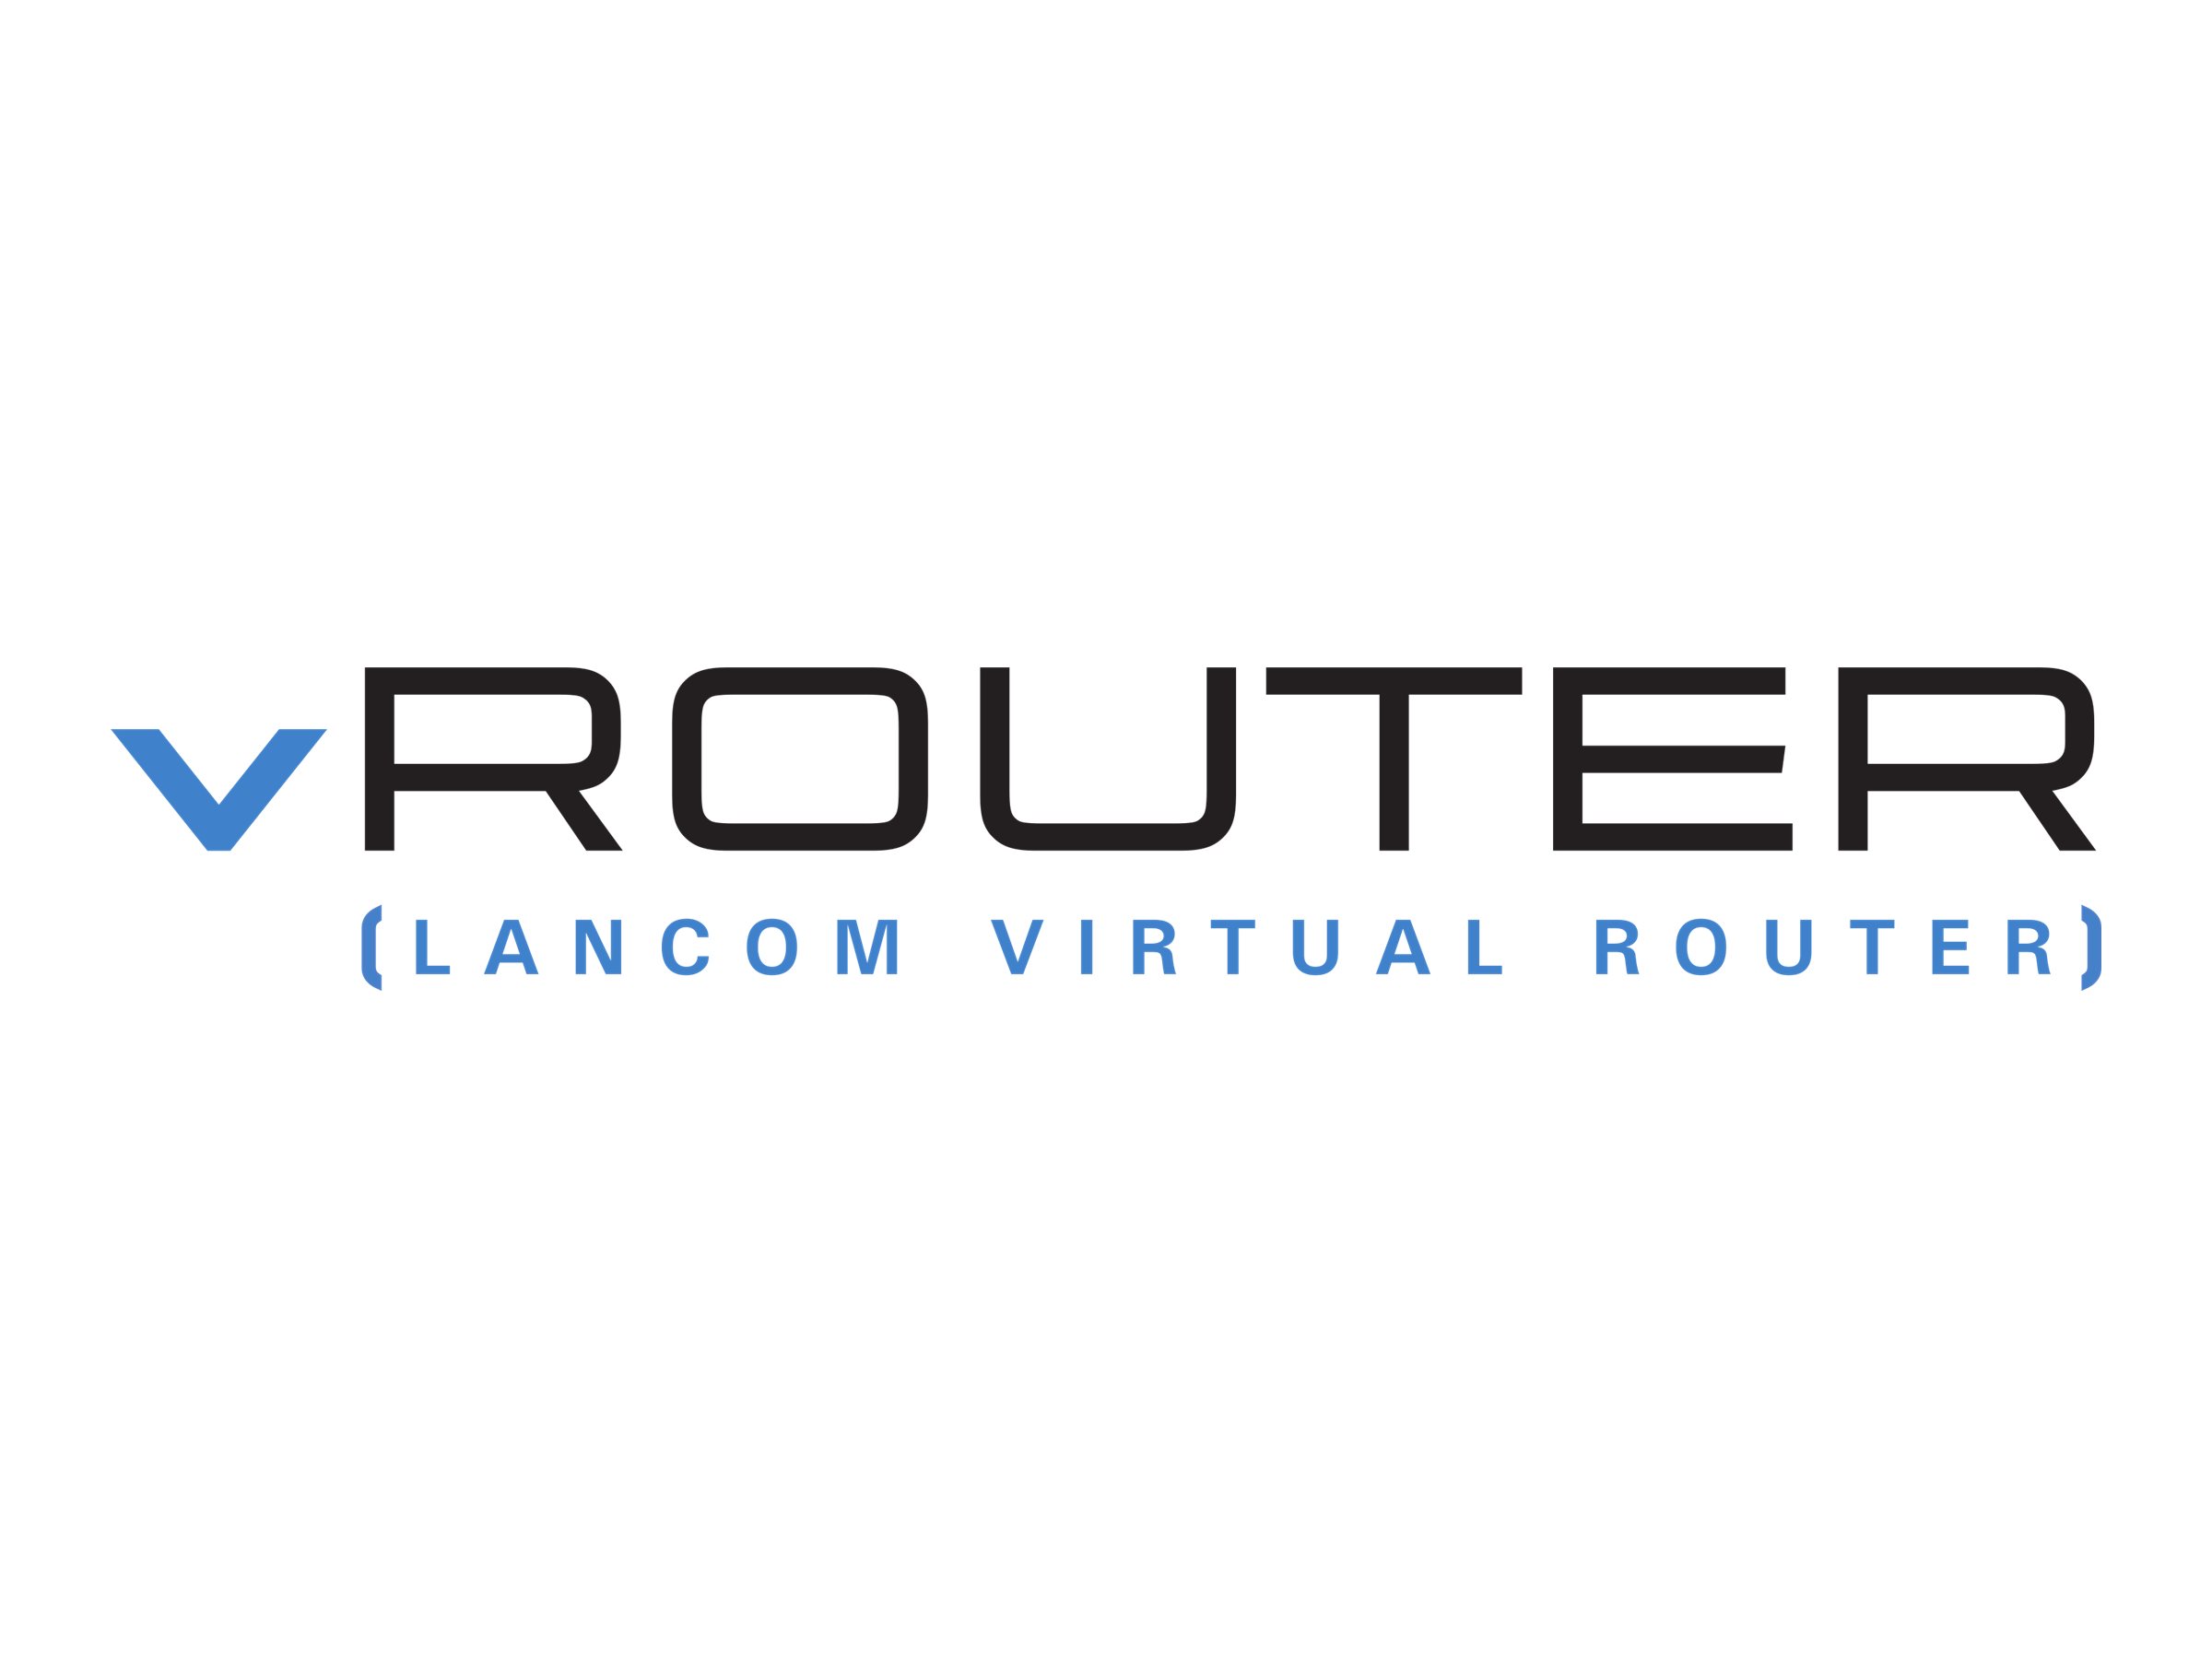 LANCOM vRouter for VMware ESXi - Runtime License (1 Jahr) - bis zu 3000 Zugriffspunkte, unbegrenzter Durchsatz, 256 ARF Netzwerke, unbegrenzte Anzahl öffentlicher Nutzer, 3000 VPN-Kanäle